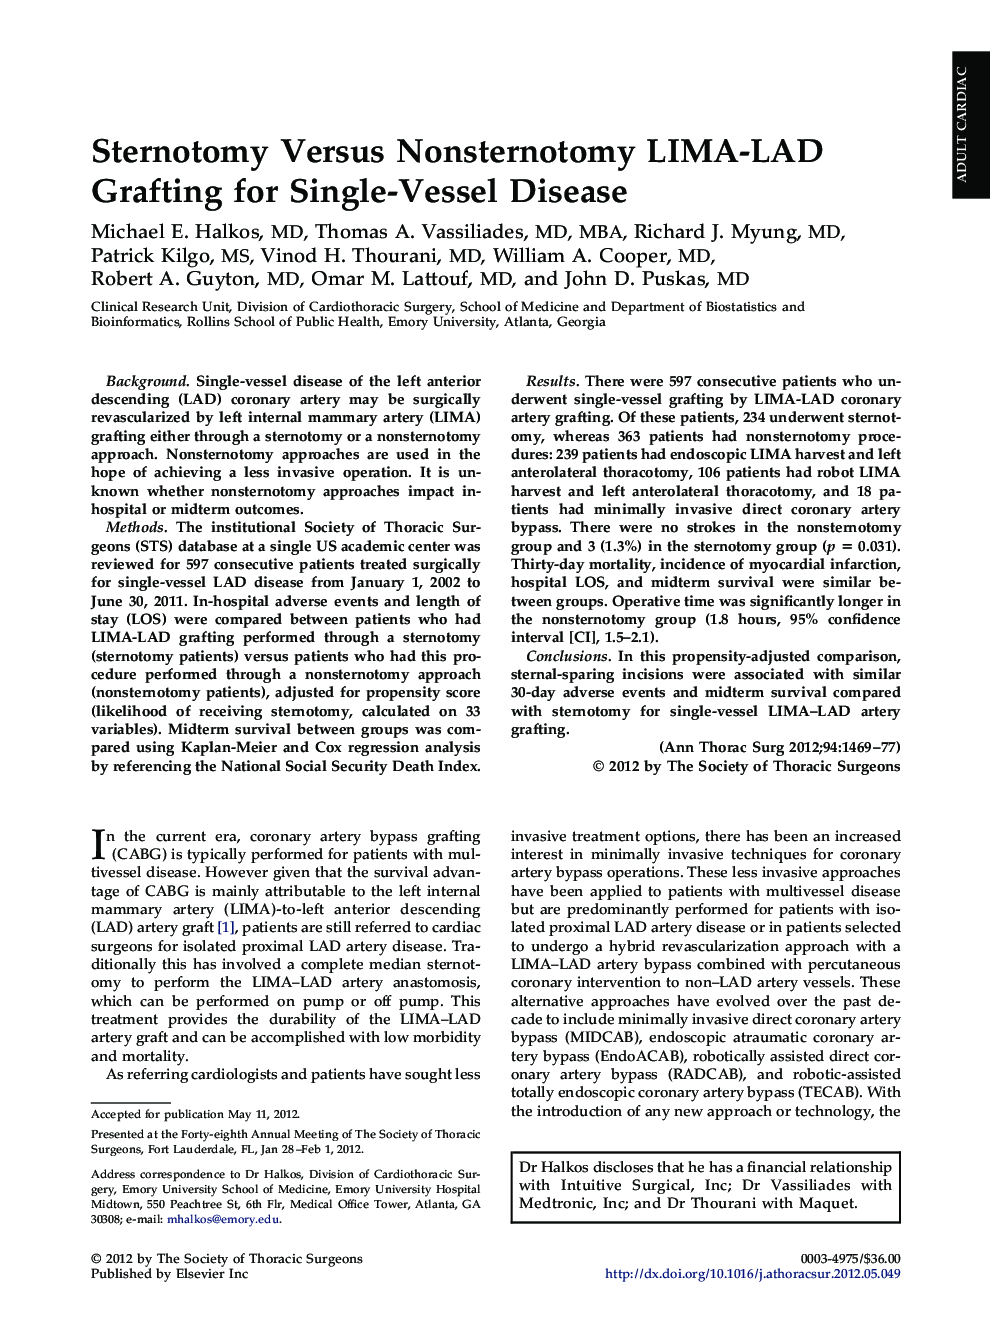 Sternotomy Versus Nonsternotomy LIMA-LAD Grafting for Single-Vessel Disease